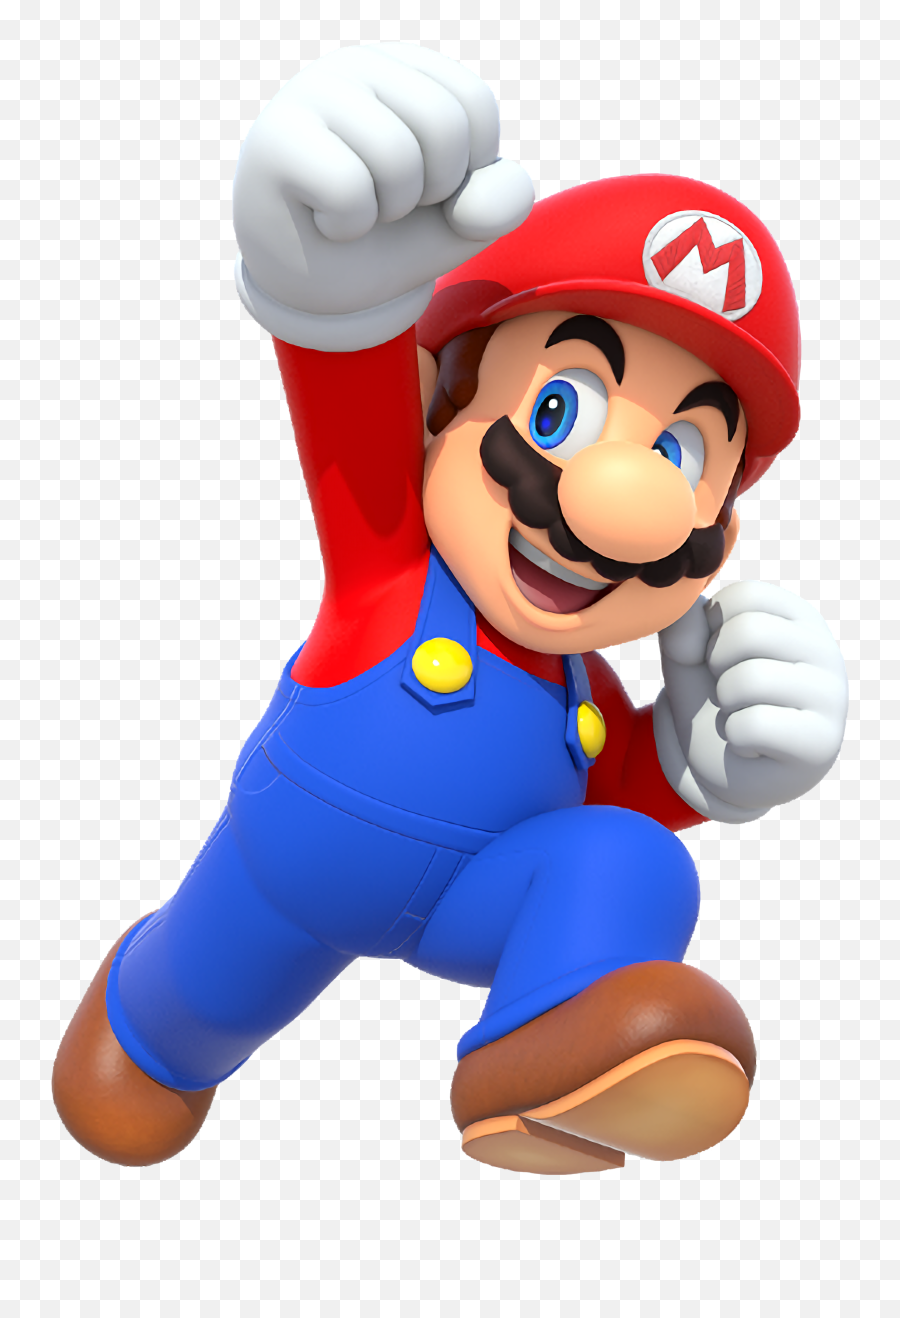 Mario Games - Play Online New Mario Games On Desura Mario T Shirt Roblox Emoji,1 Up Mushroom Animated Emoticon